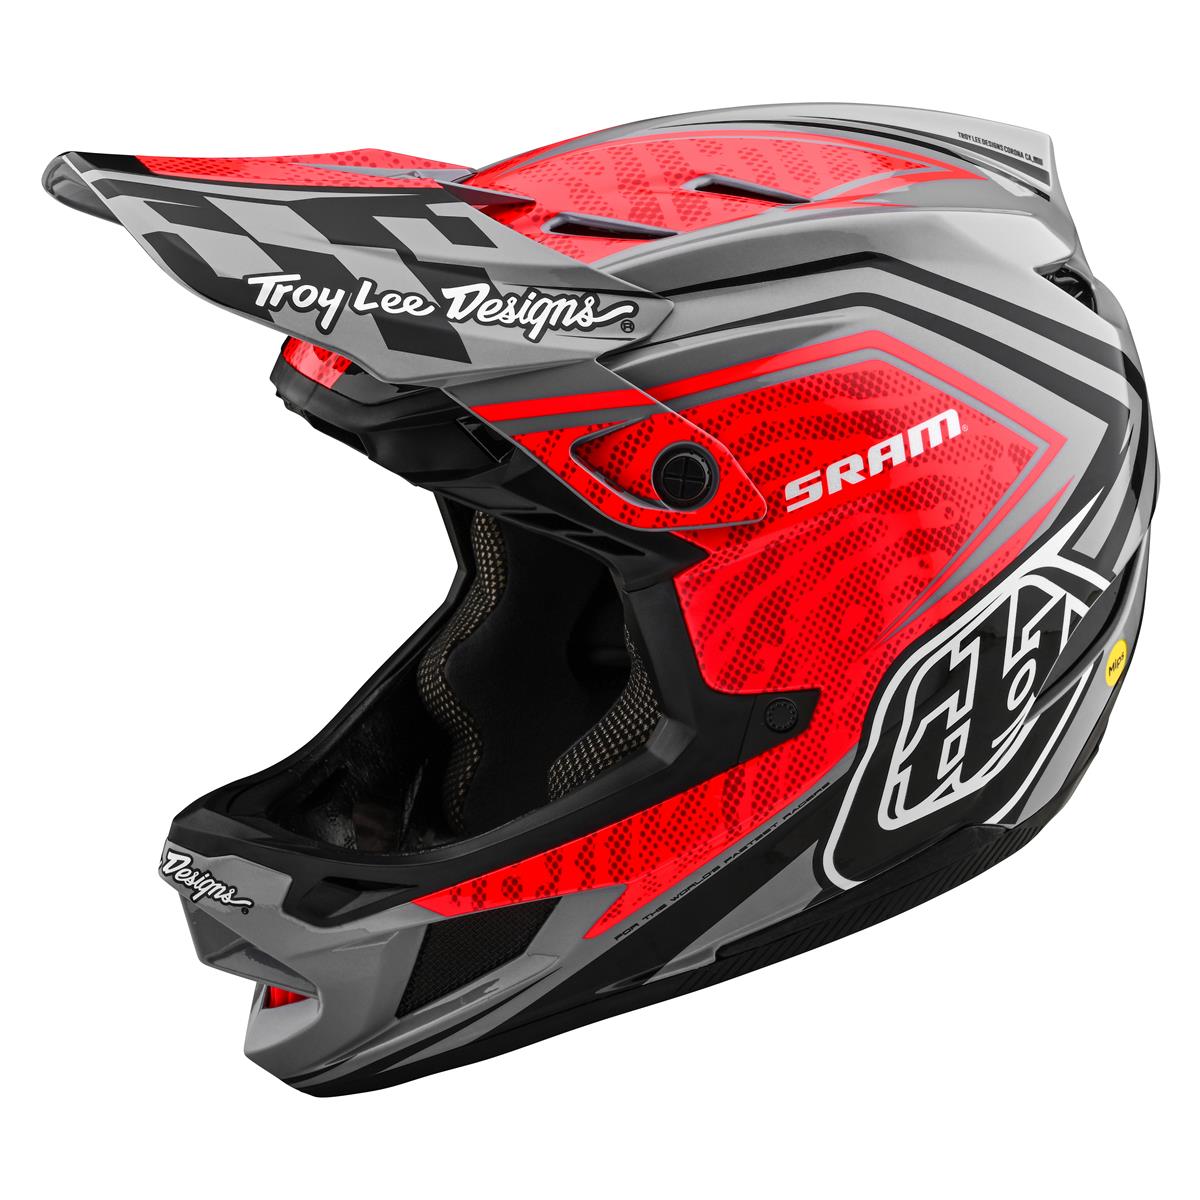 Troy Lee Designs Downhill MTB Helmet D4 Carbon MIPS Sram - Red/Black